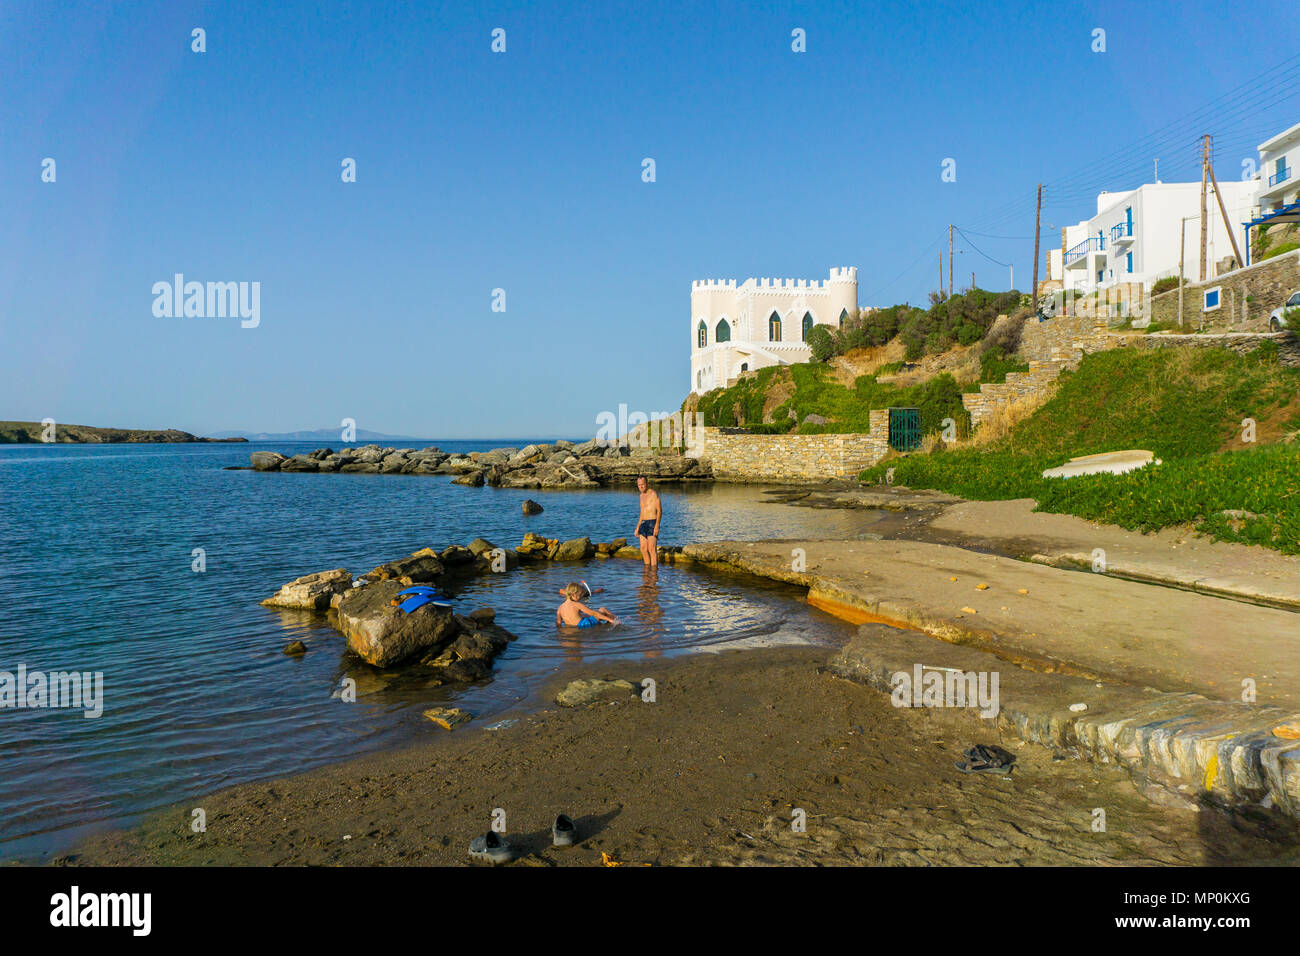 Die Menschen baden im heissen Quellwasser in den Strand von Loutra (Bäder) in Kythnos. Heiße Mineralquelle Wasser fließt durch einen Kanal und vermischt sich mit dem Meer Stockfoto